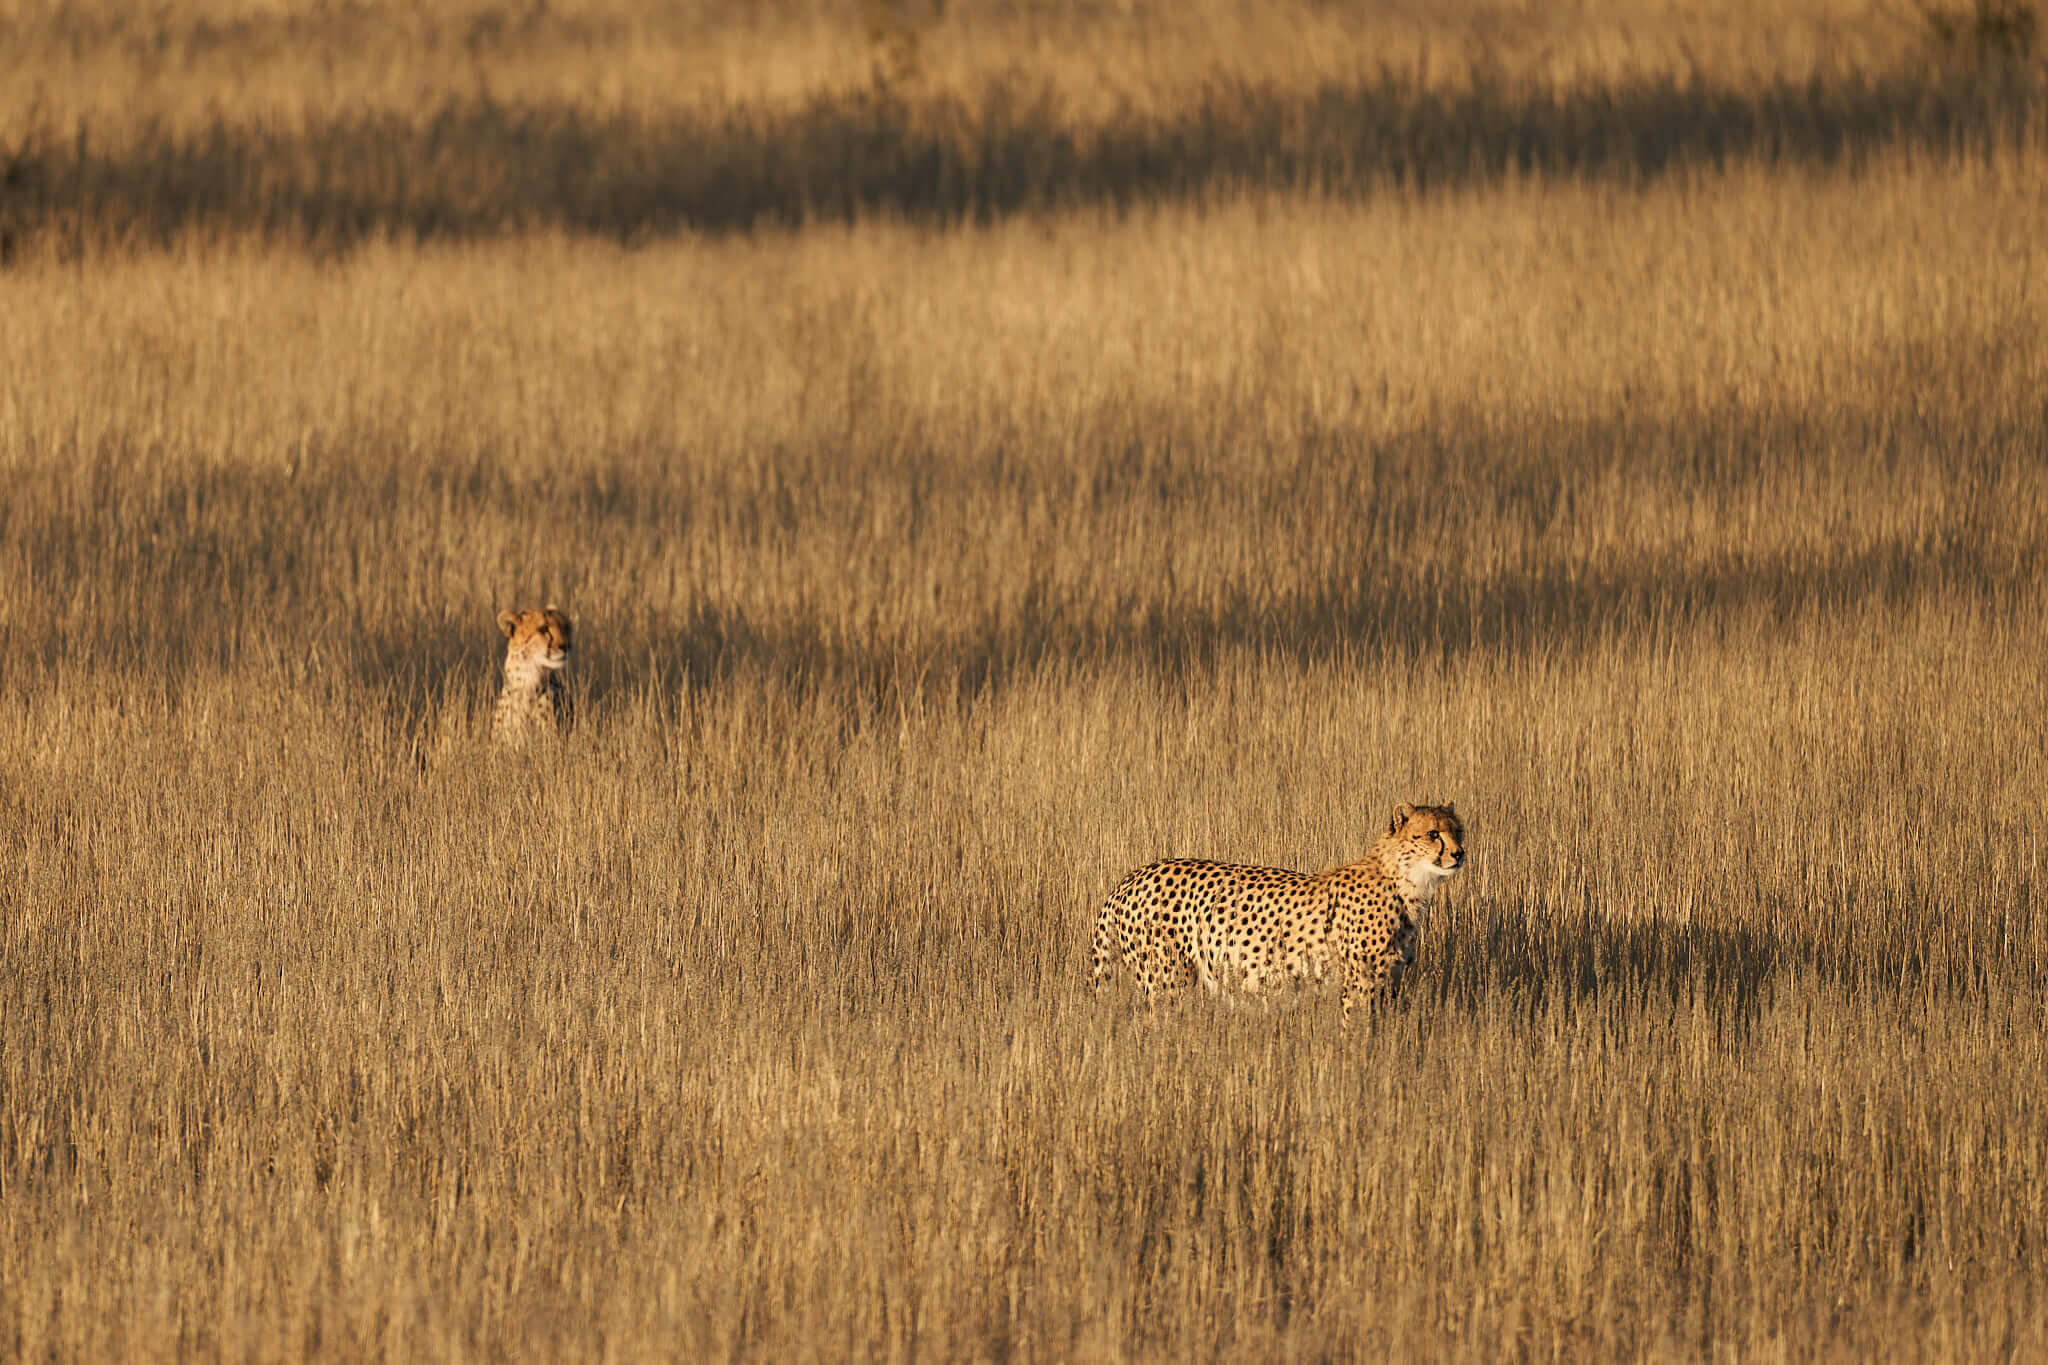 Das Bild zeigt zwei Geparden im hohen Gras